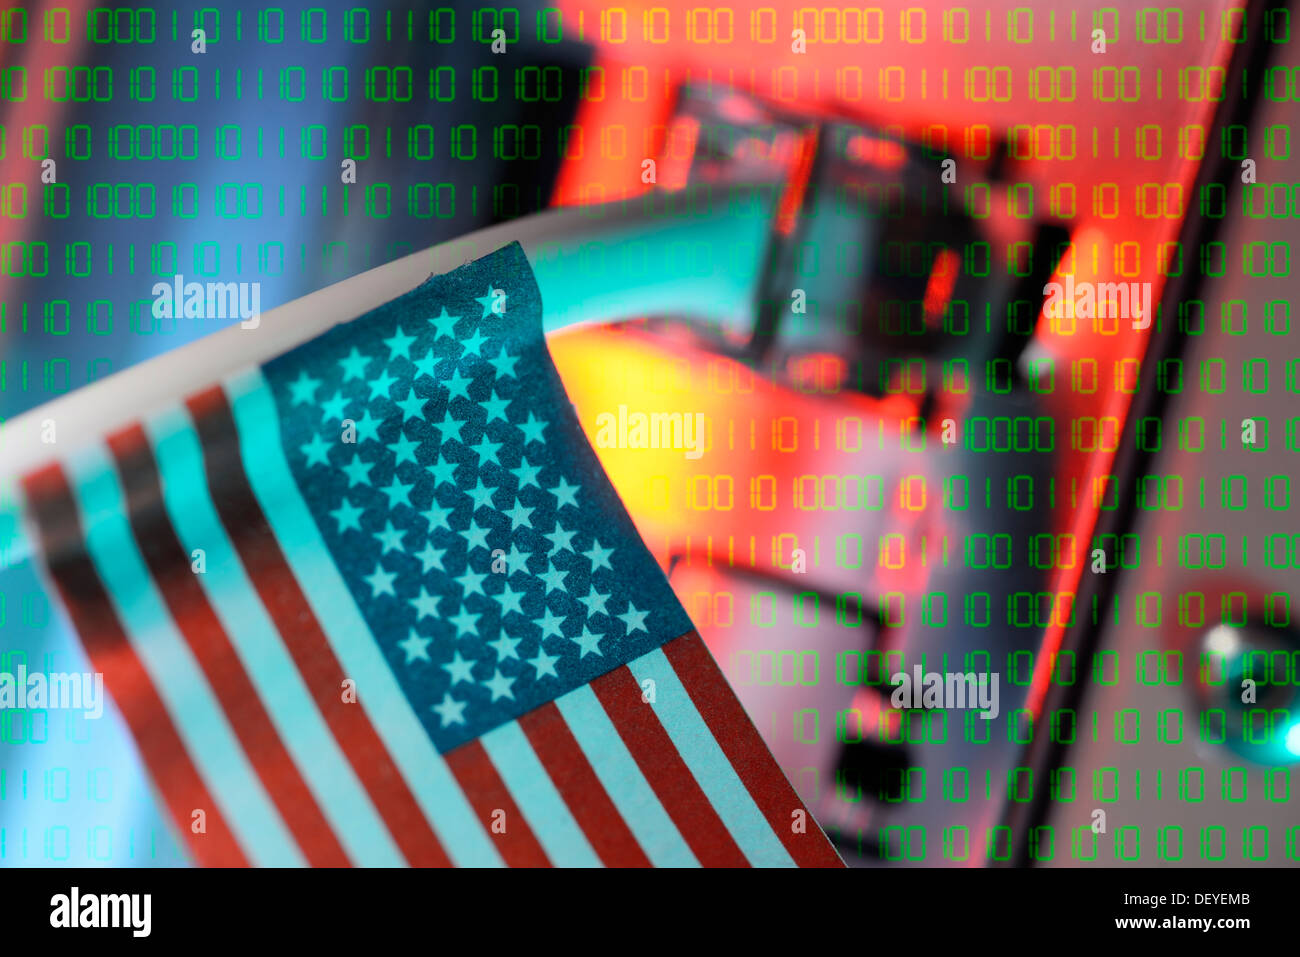 Internet por cable con la bandera de Estados Unidos, PRISM, Internetkabel Spaehprogramm mit USA-Fahne, Prism Spähprogramm Foto de stock